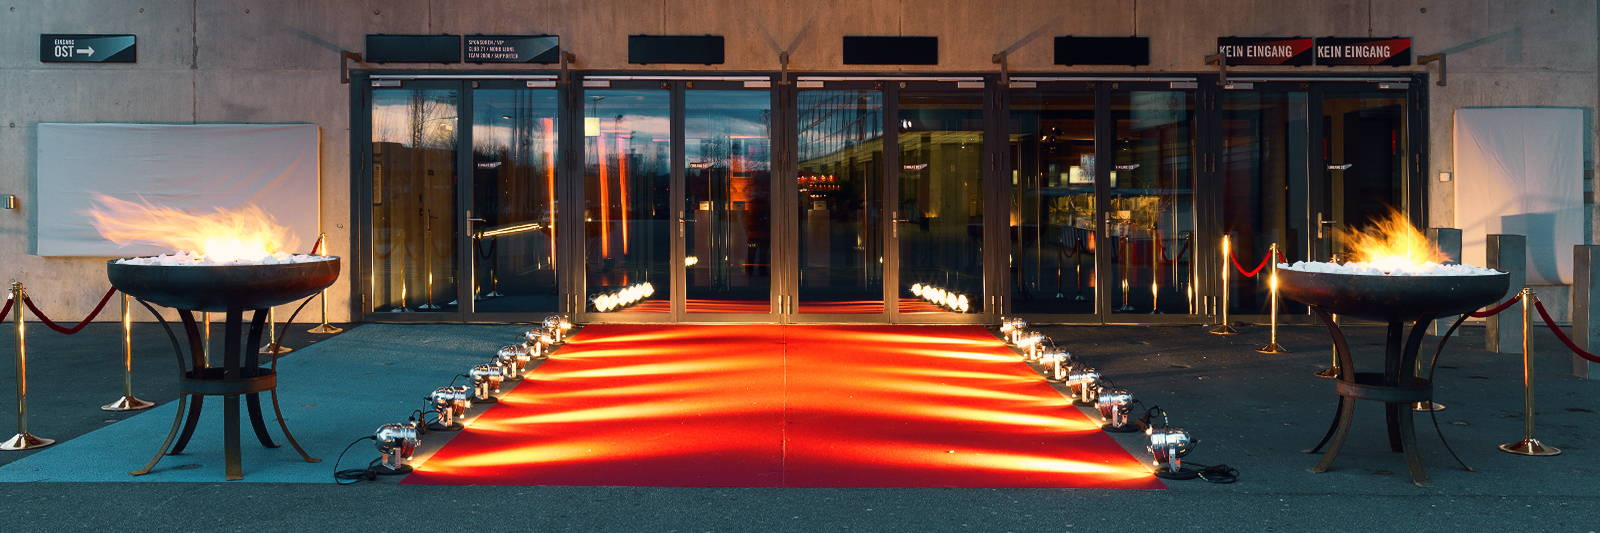 Feuerschale mieten für Event Eingangsbereich mit rotem Event Teppich und roten Kordeln